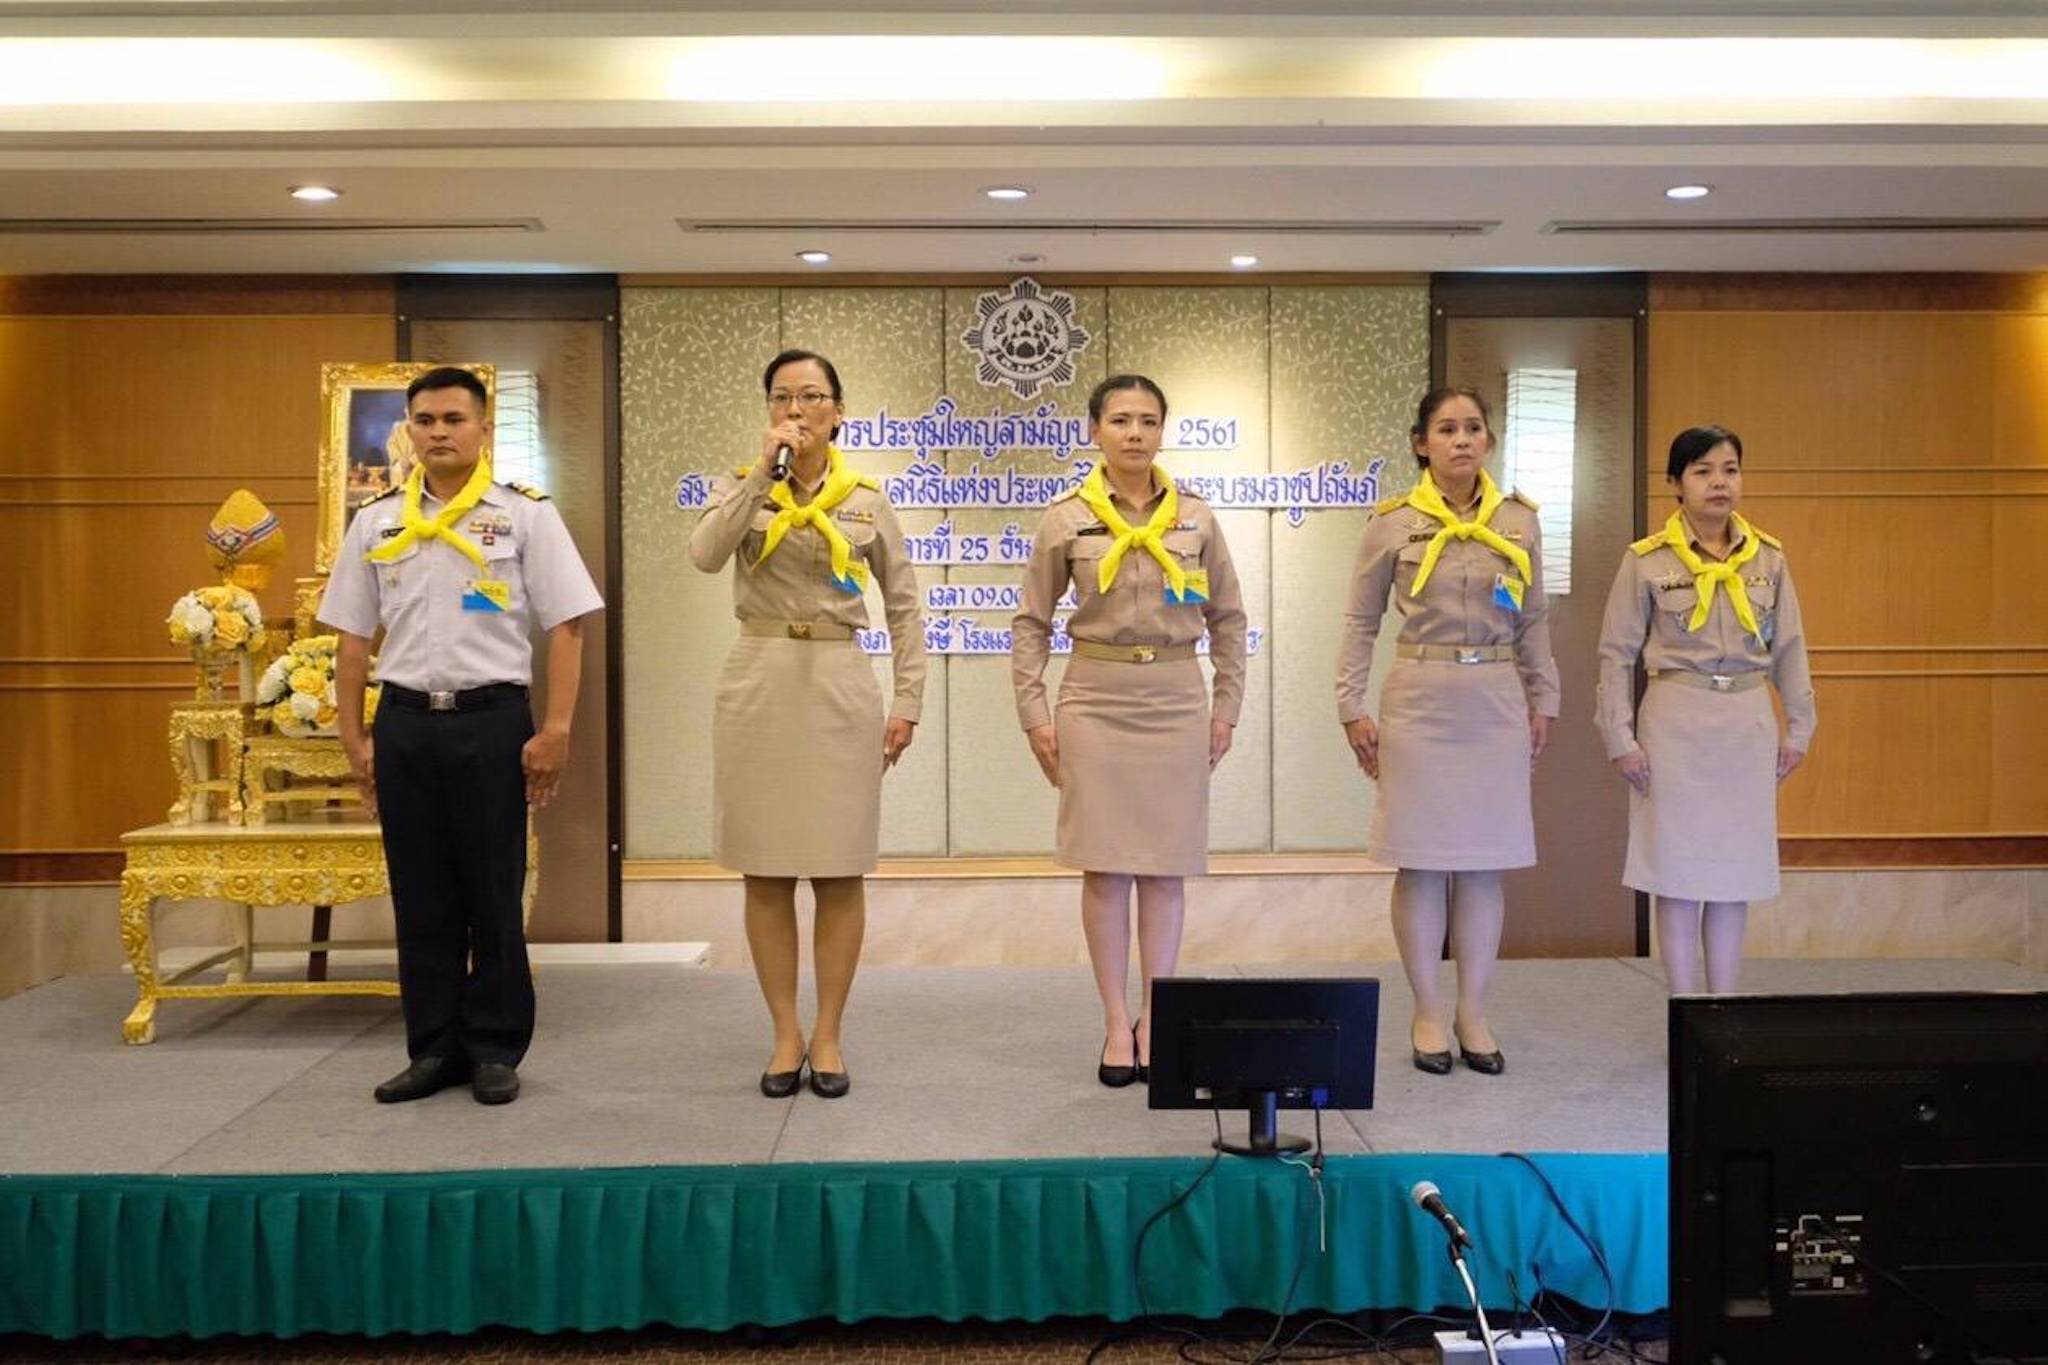 กิจกรรมการประชุมใหญ่สามัญประจำปีสมาคมสันนิบาตมูลนิธิสมาคมแห่งประเทศไทย วันที่ 25 ธันวาคม  2561         ณ โรงแรมรอยัลริเวอร์ เขตบางพลัด กรุงเทพฯ